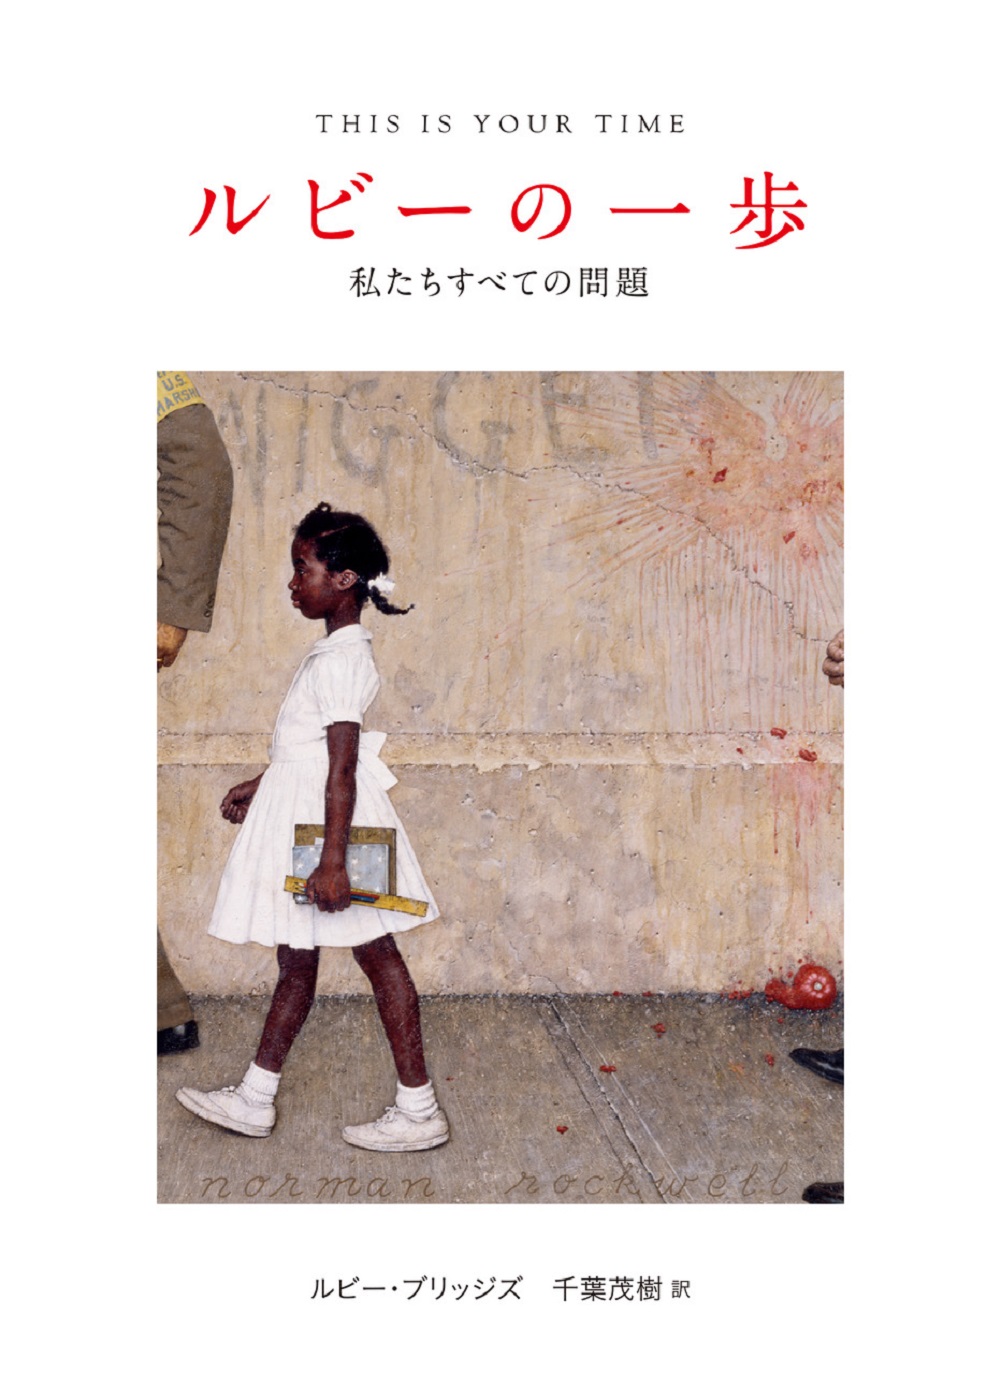 本の表紙：黒人の女の子が本を携えて道を歩いています。